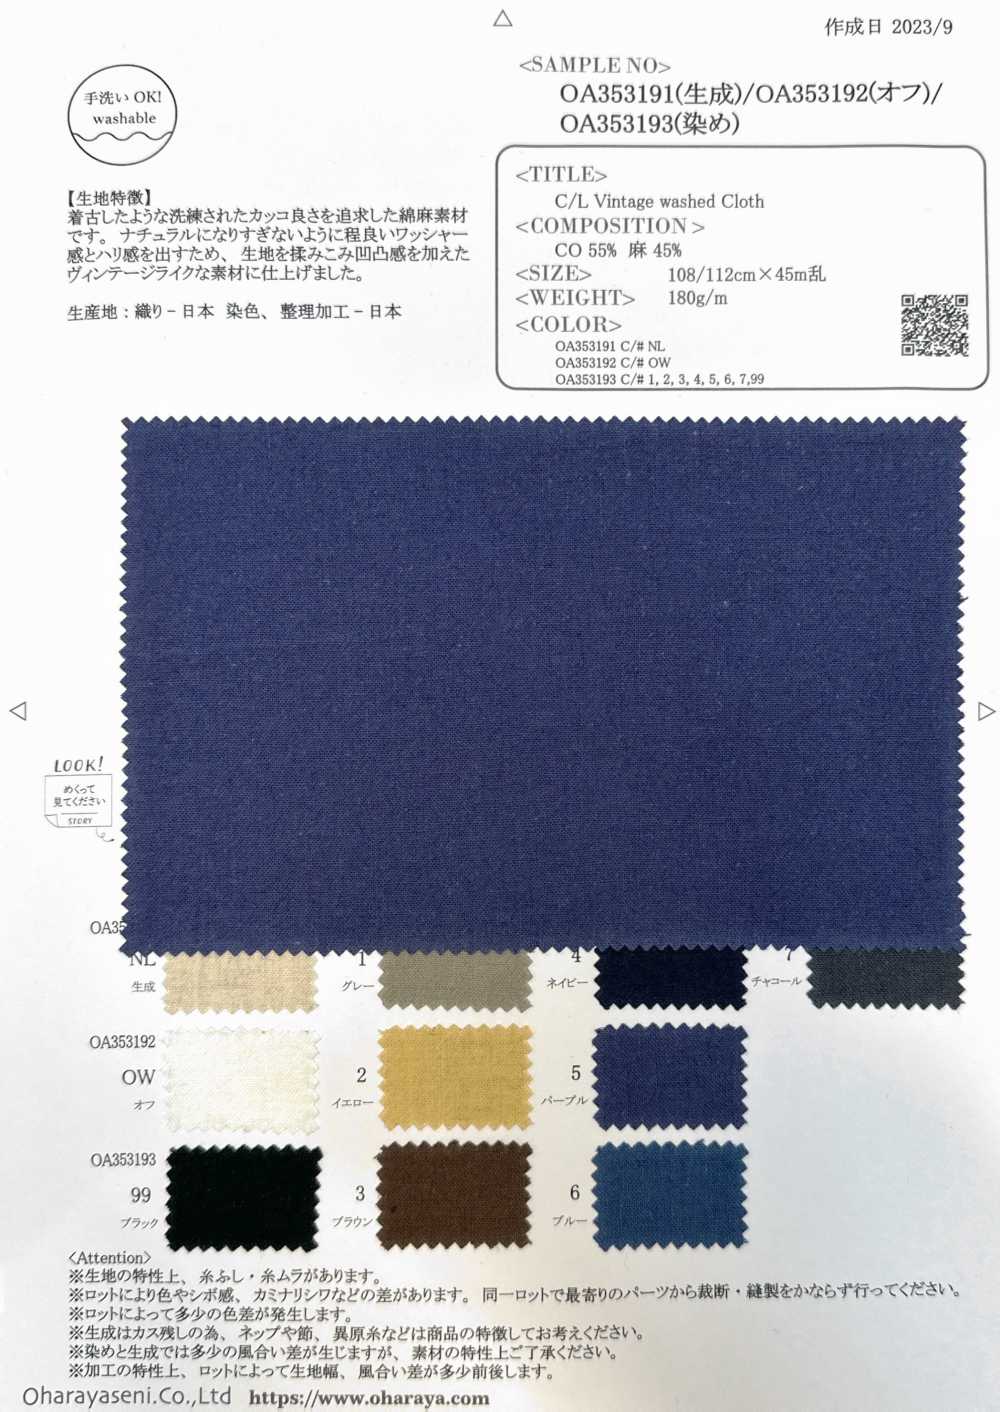 OA353192 Tissu Lavé Vintage C/L[Fabrication De Textile] Oharayaseni